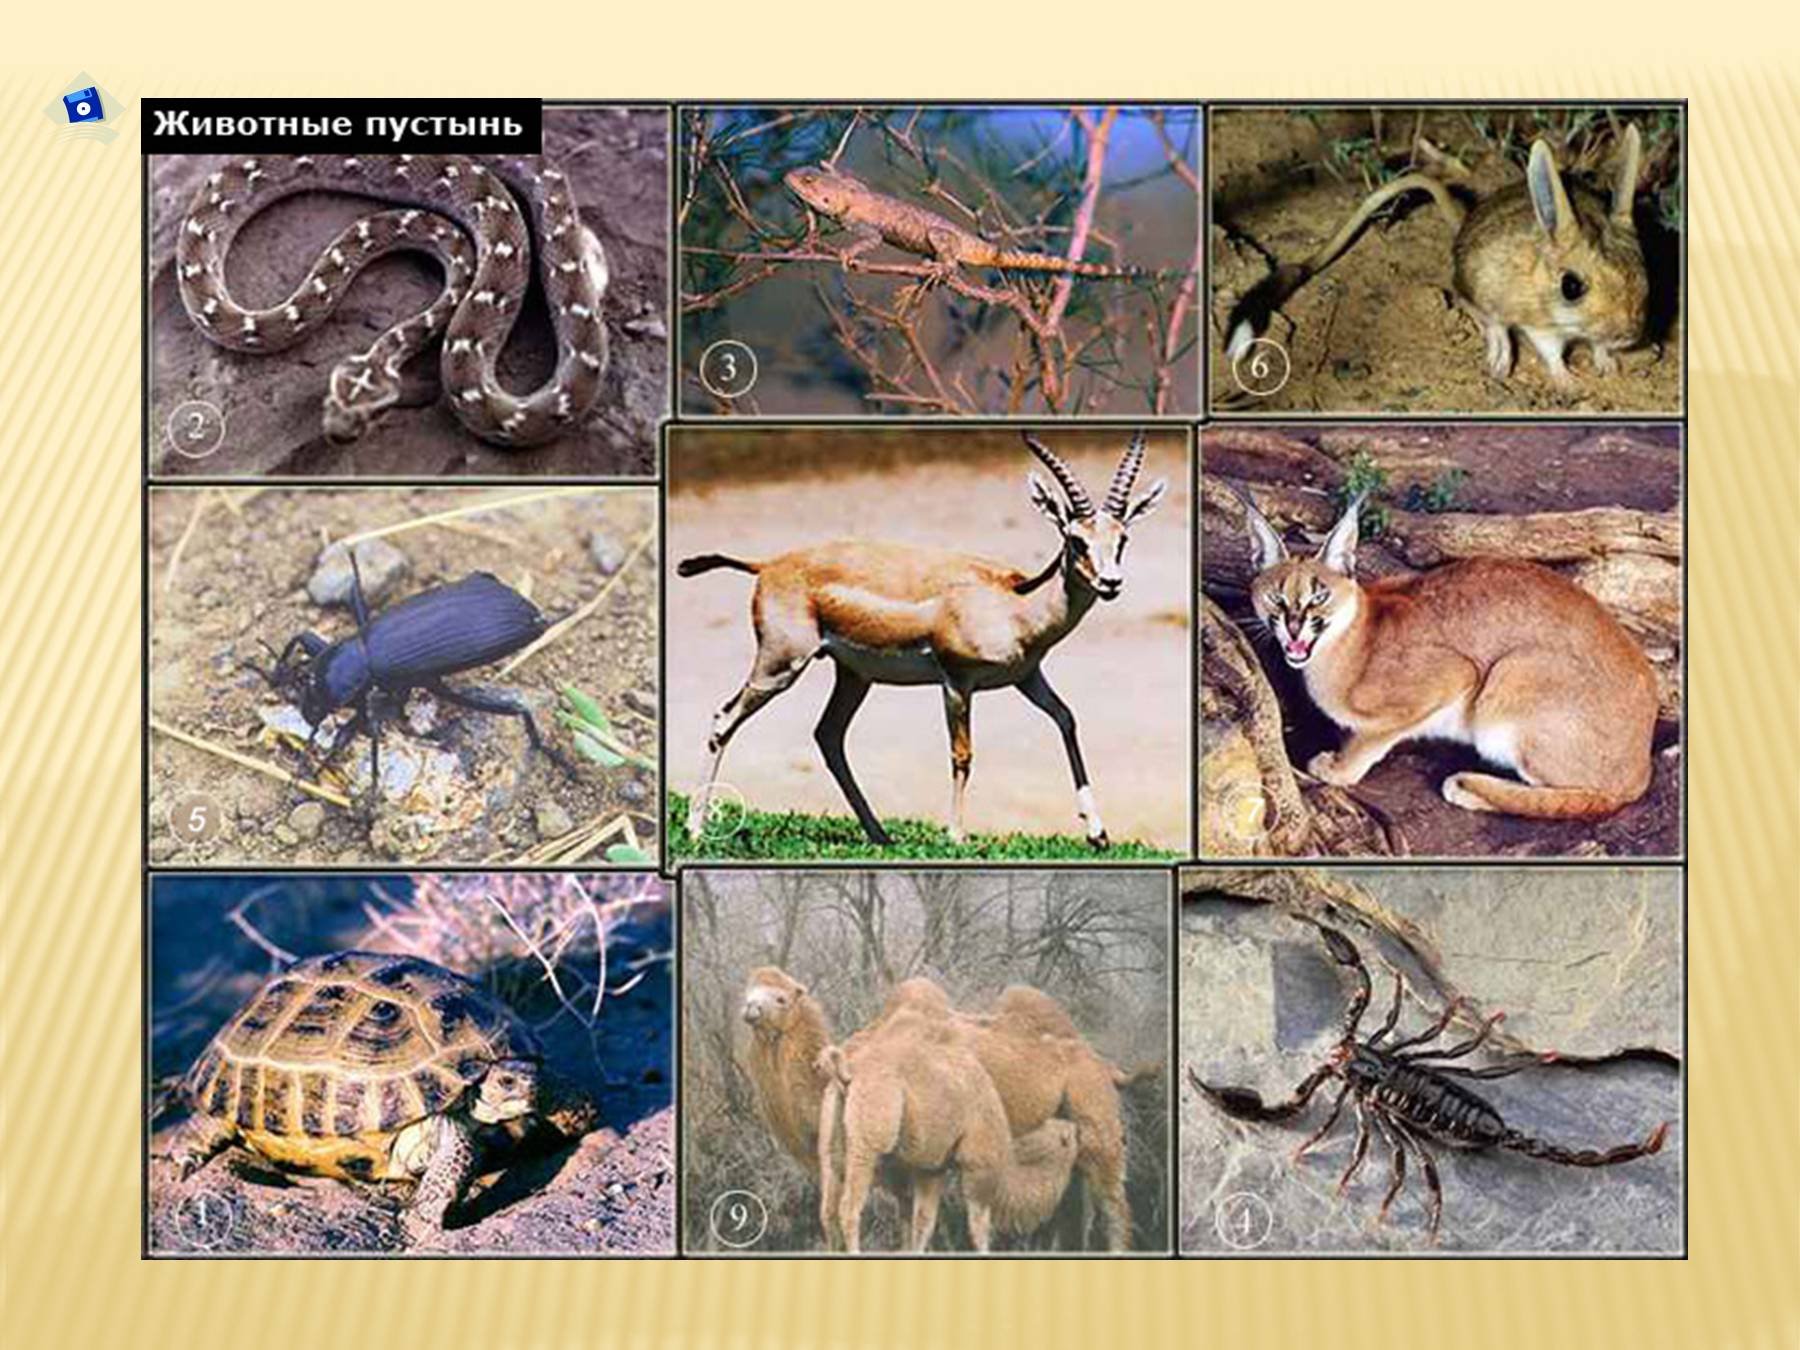 Сообщение о живых организмах разных природных зон. Животные пустыни. Обитатели зоны пустынь. Картинки животных пустыни. Животные пустынной зоны.